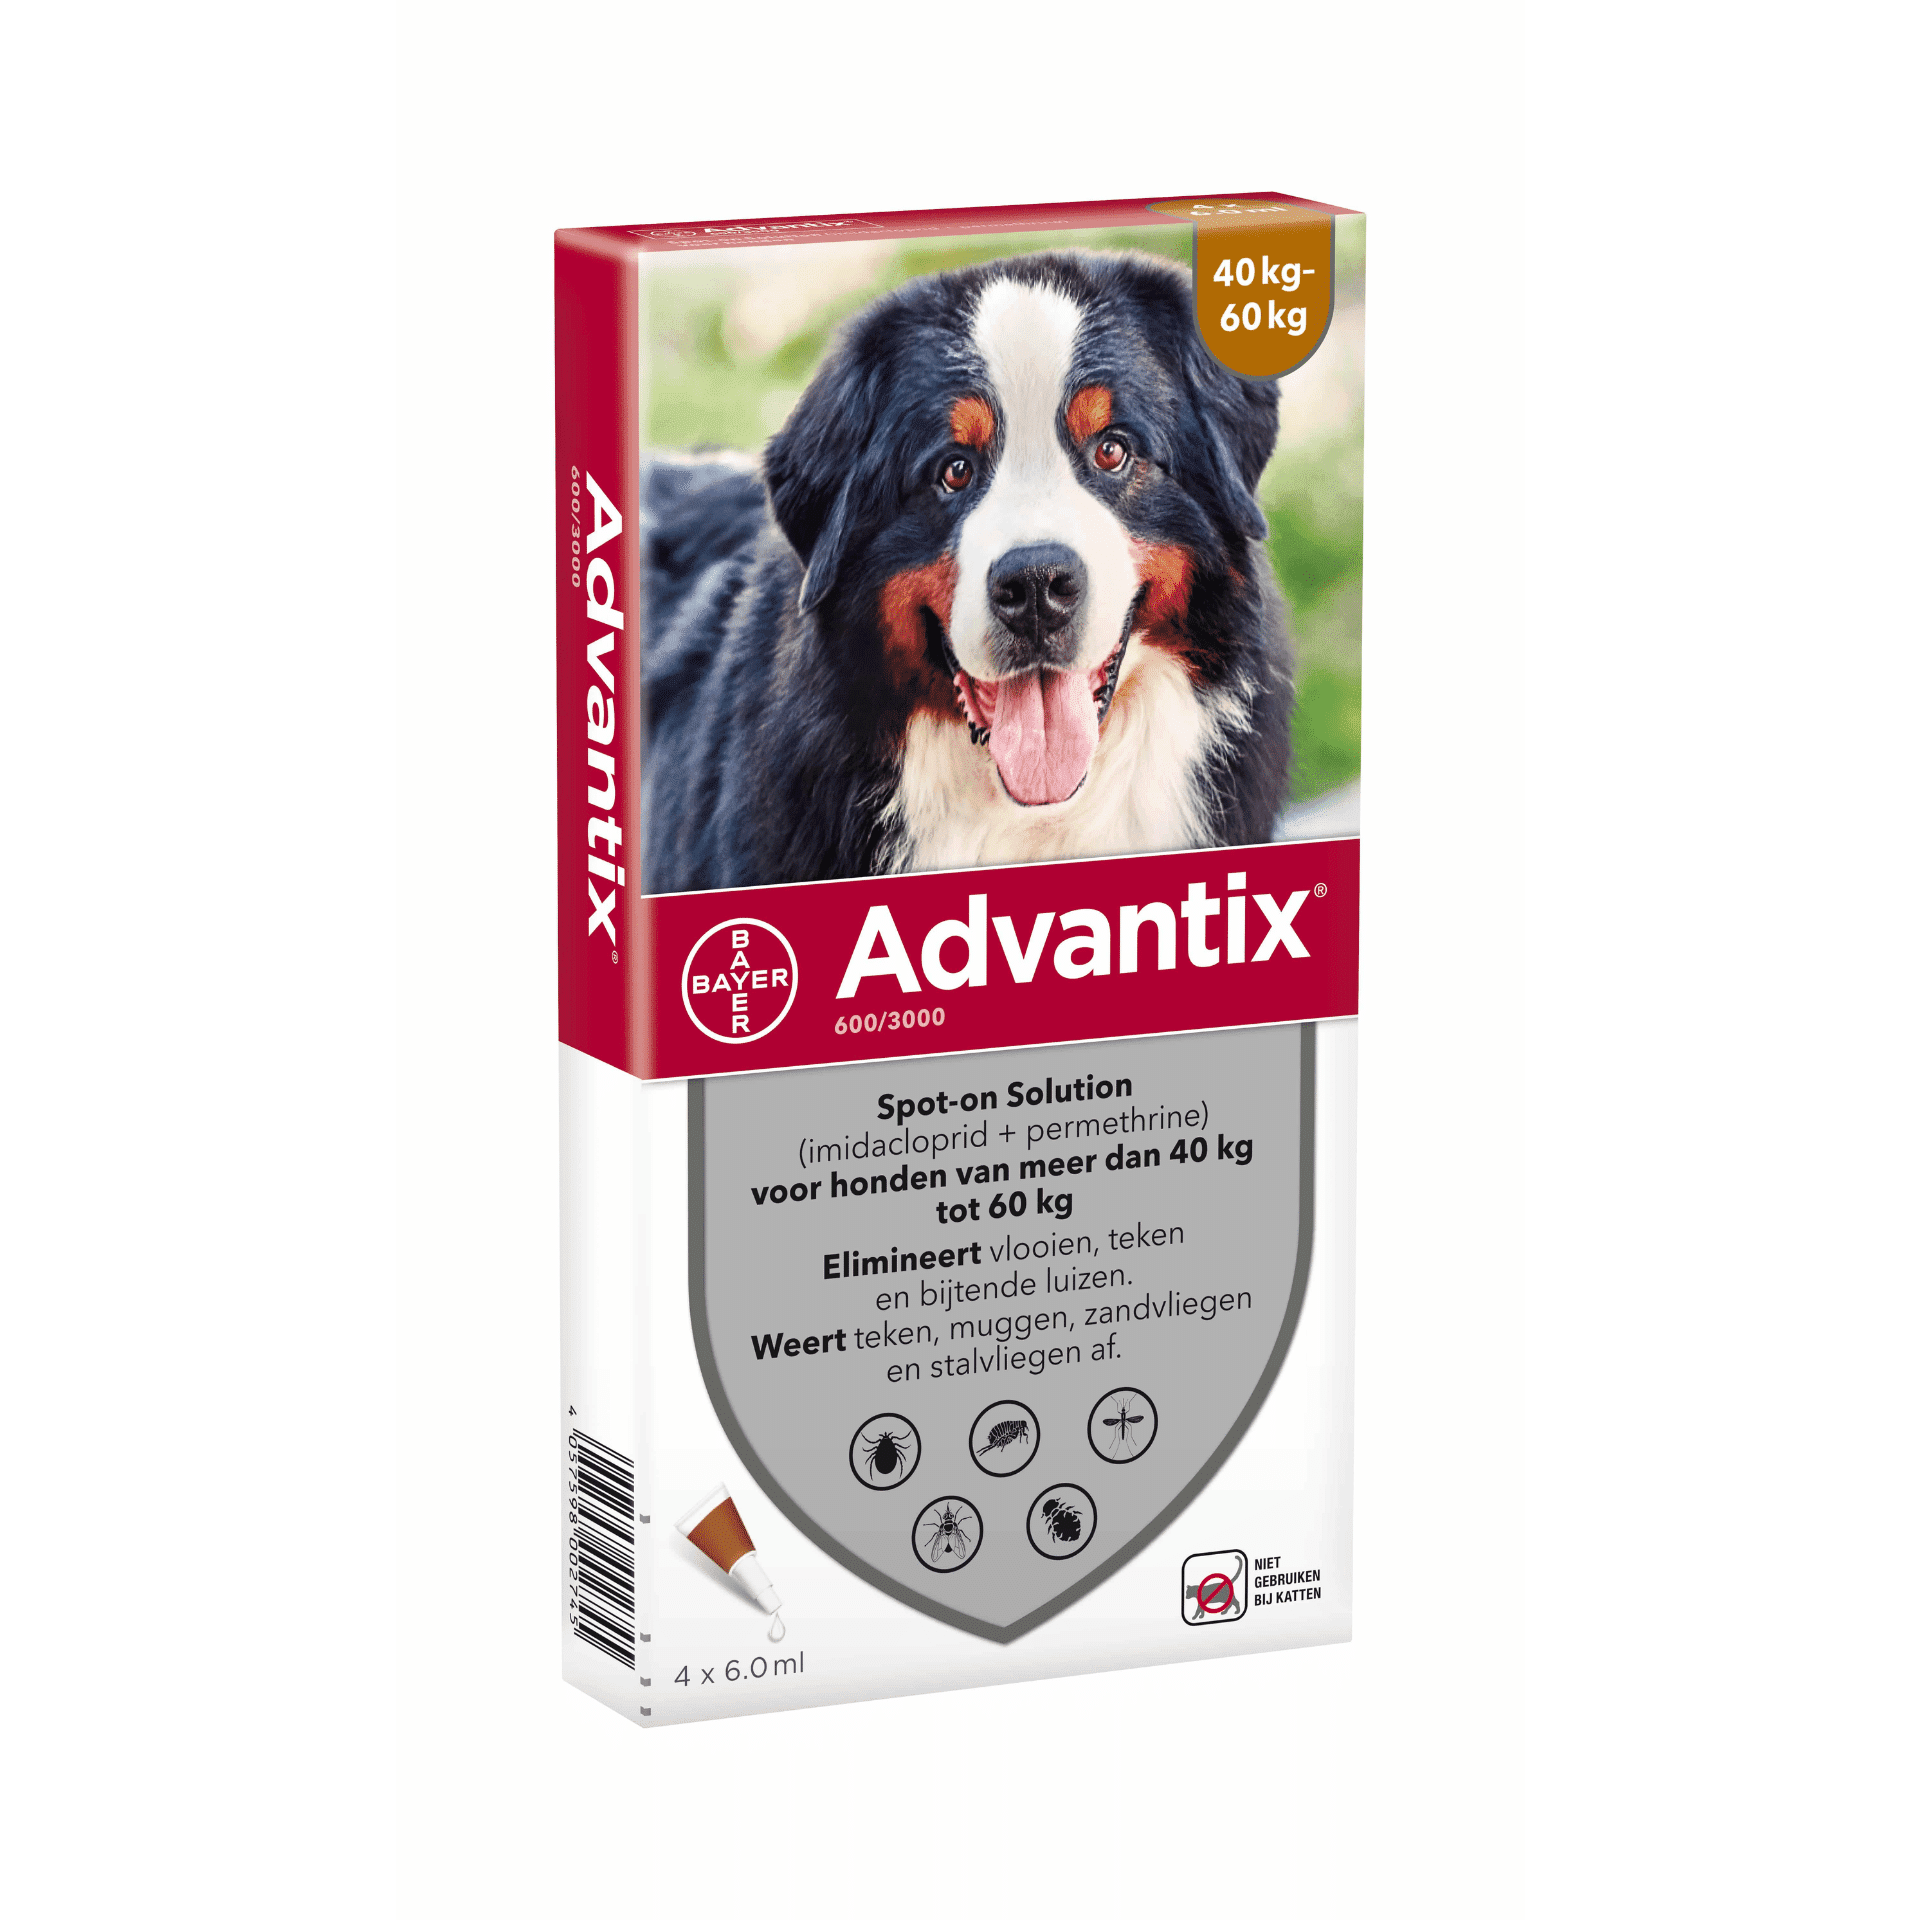 Advantix Dog Spot-on Sol Chien 40-60kg Pipet 4 x 6ml